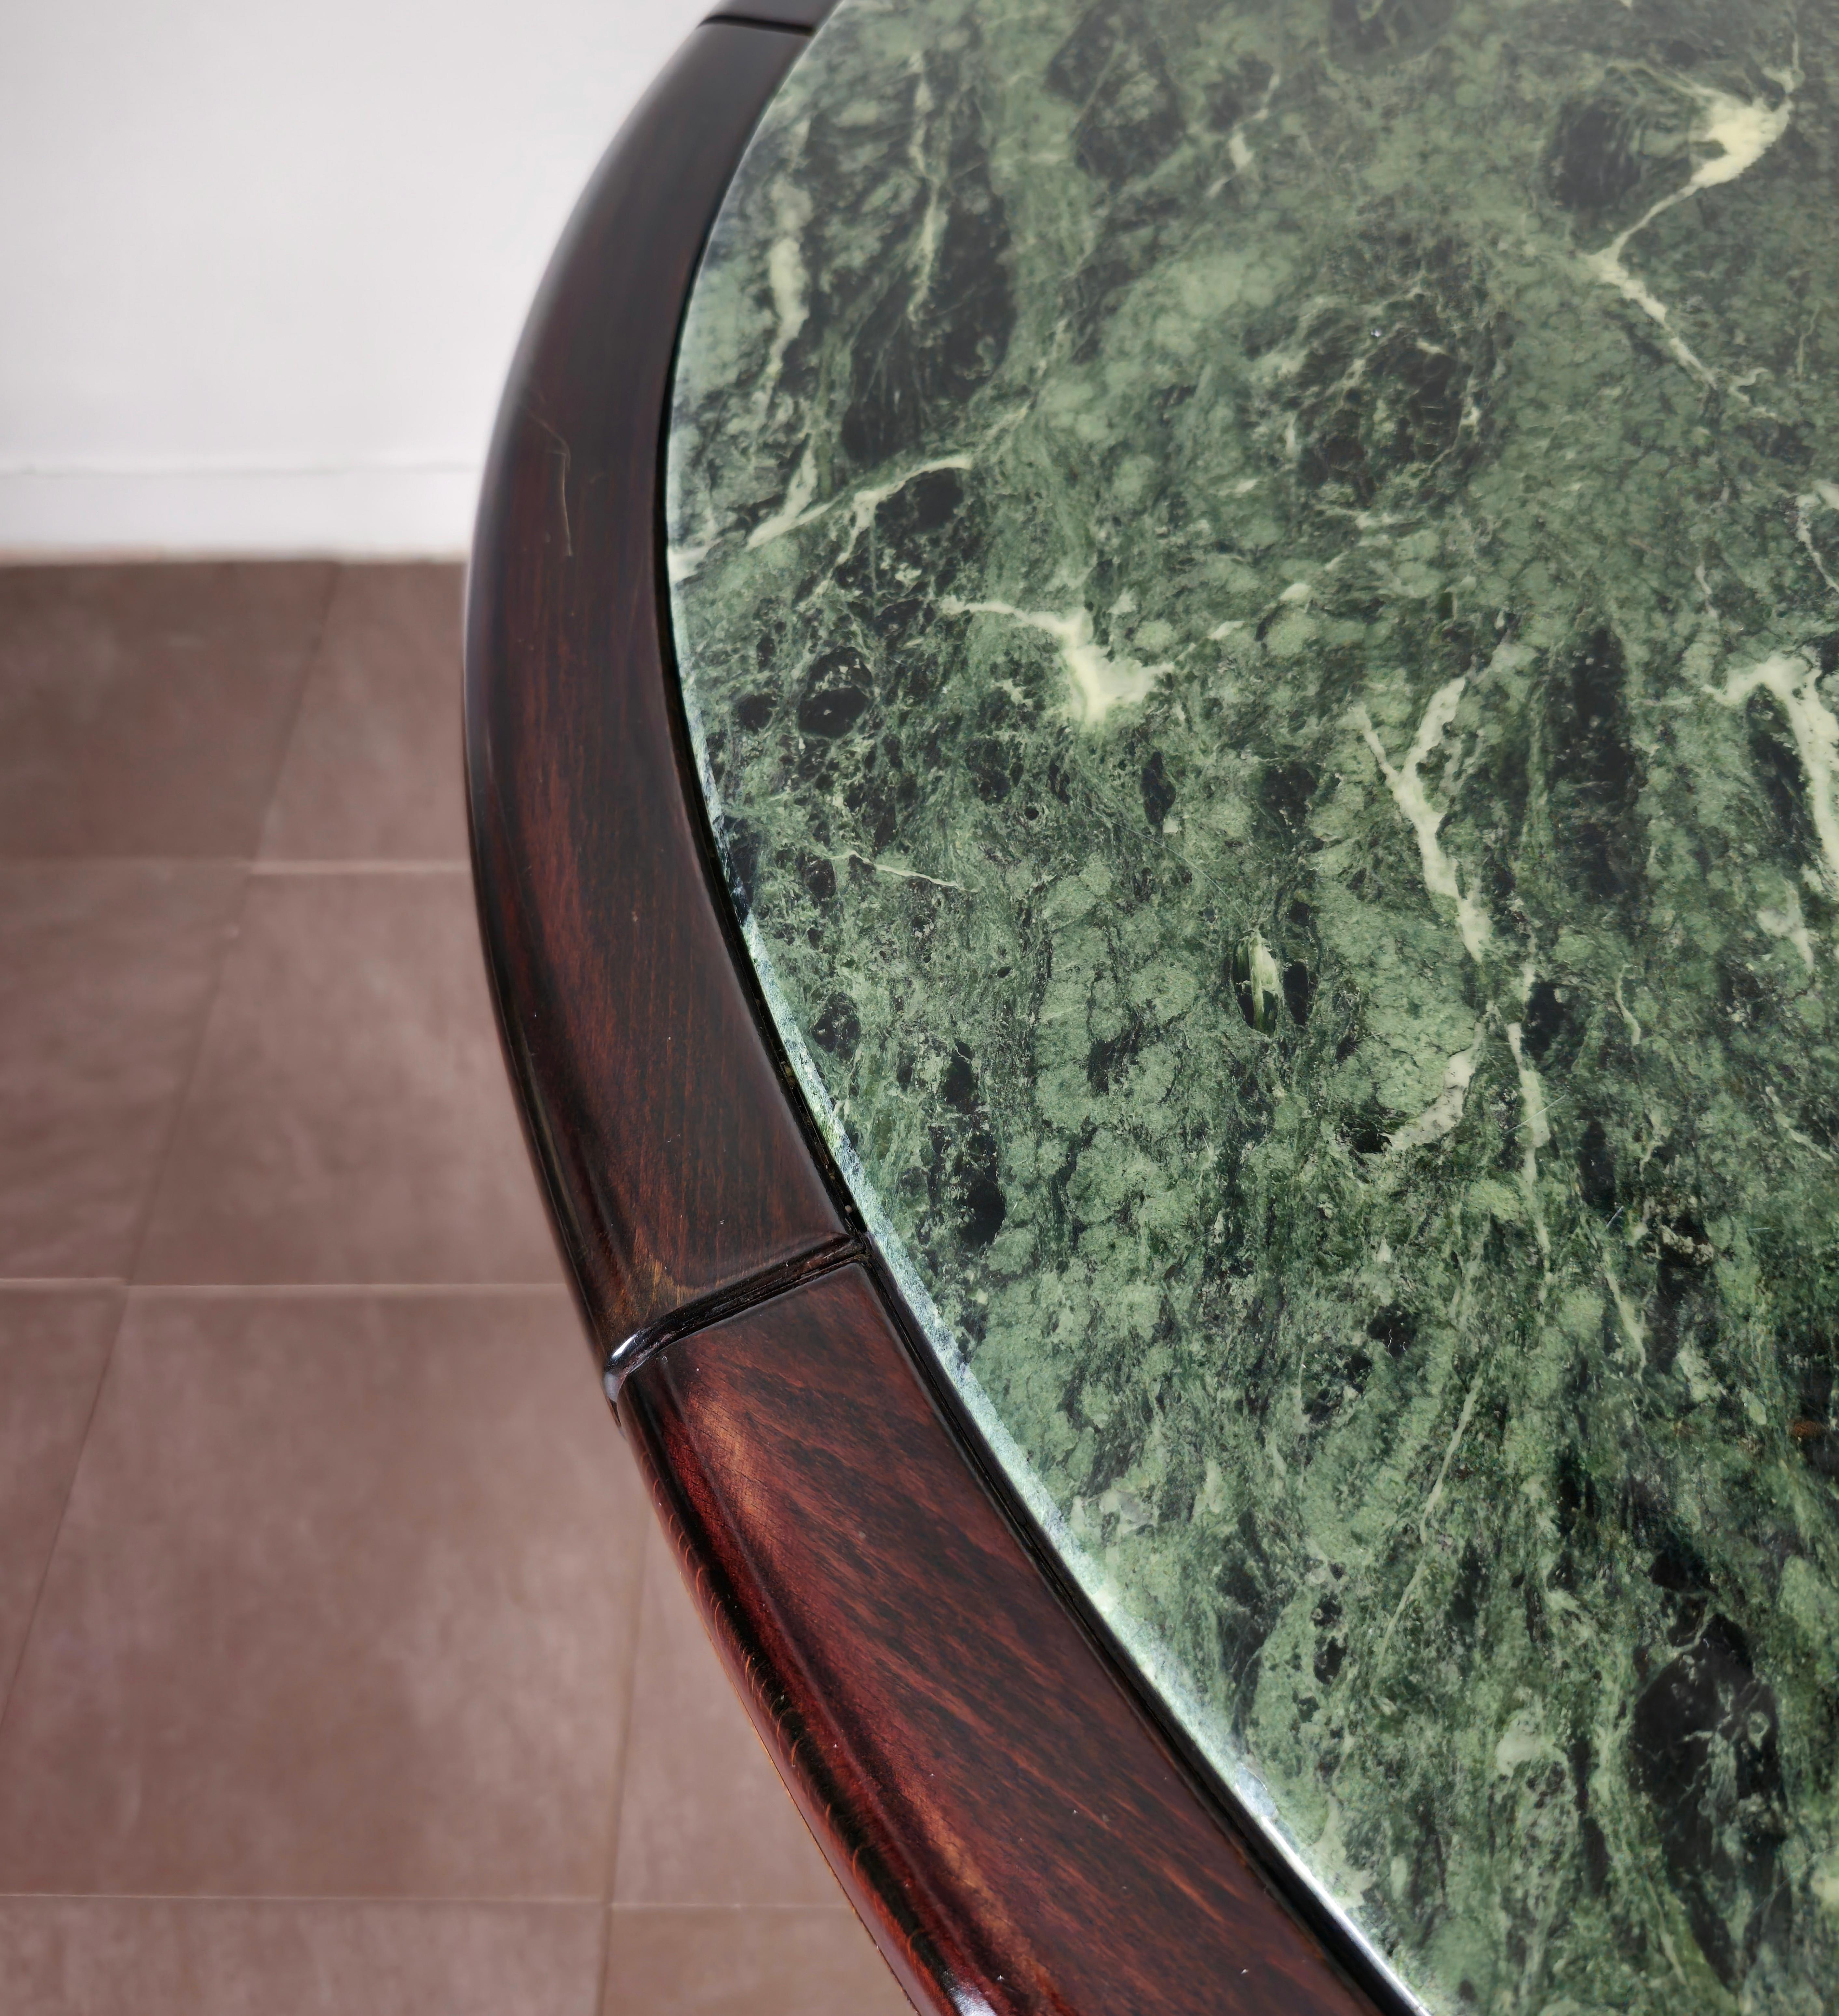 Table de salle à manger avec pied ovale en bois, accessoires en acier chromé et plateau circulaire en marbre vert du Guatemala avec bordure en bois. Fabriqué en Italie dans les années 70.



Note : Nous essayons d'offrir à nos clients un excellent